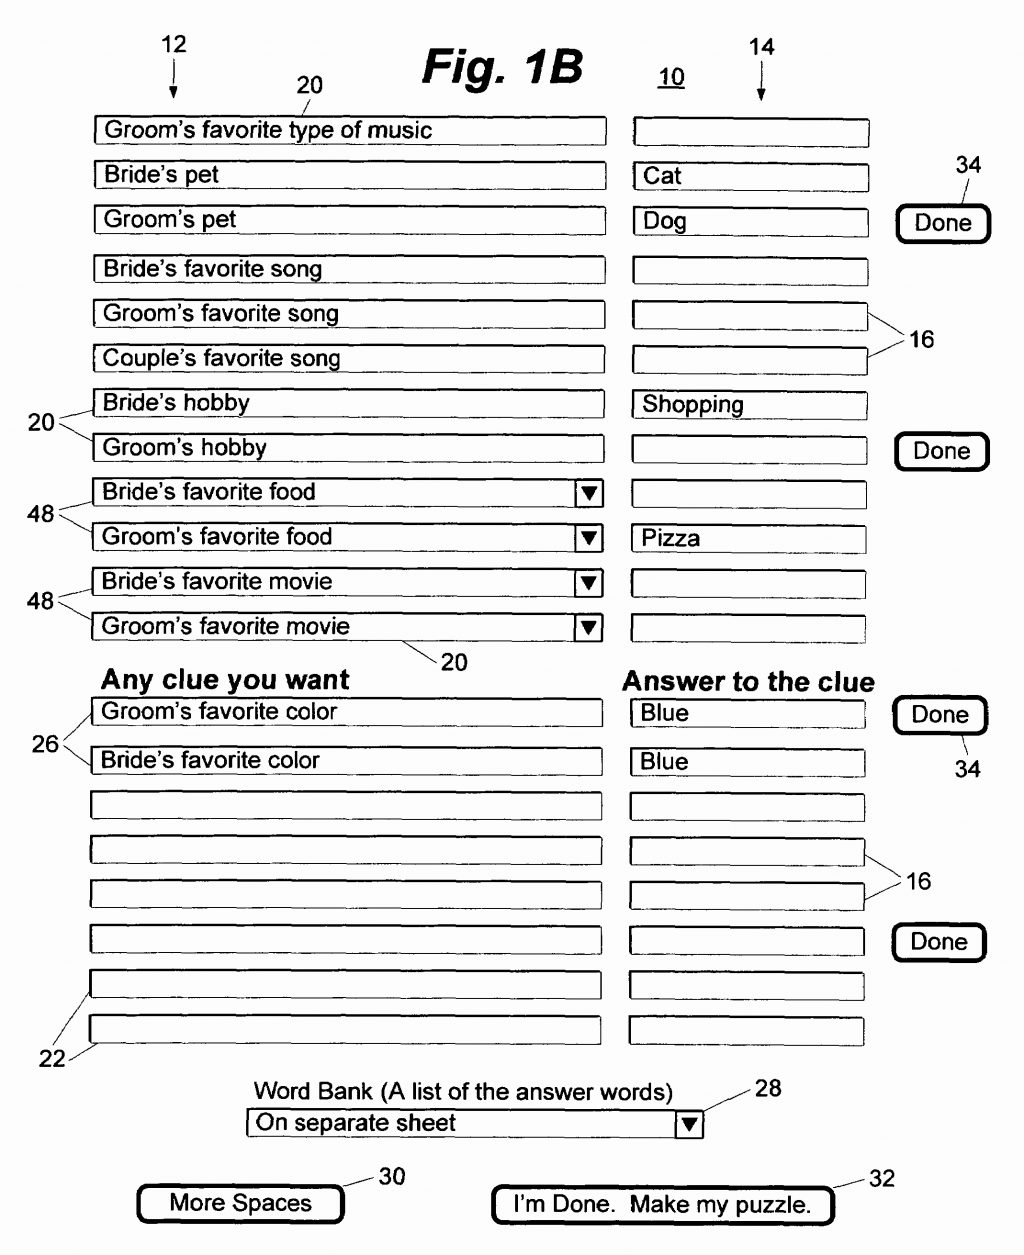 Spreadsheet Part Crossword within Spreadsheet Part Crossword Contents